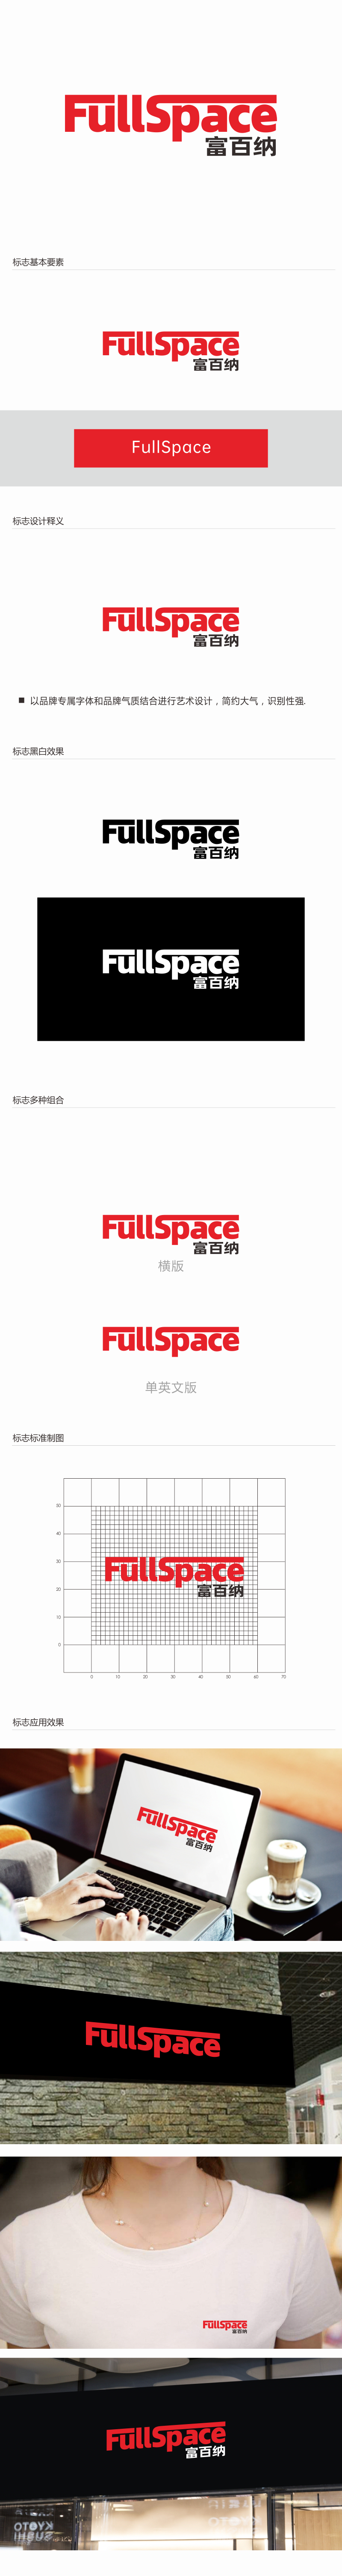 林思源的FullSpace富百纳logo设计